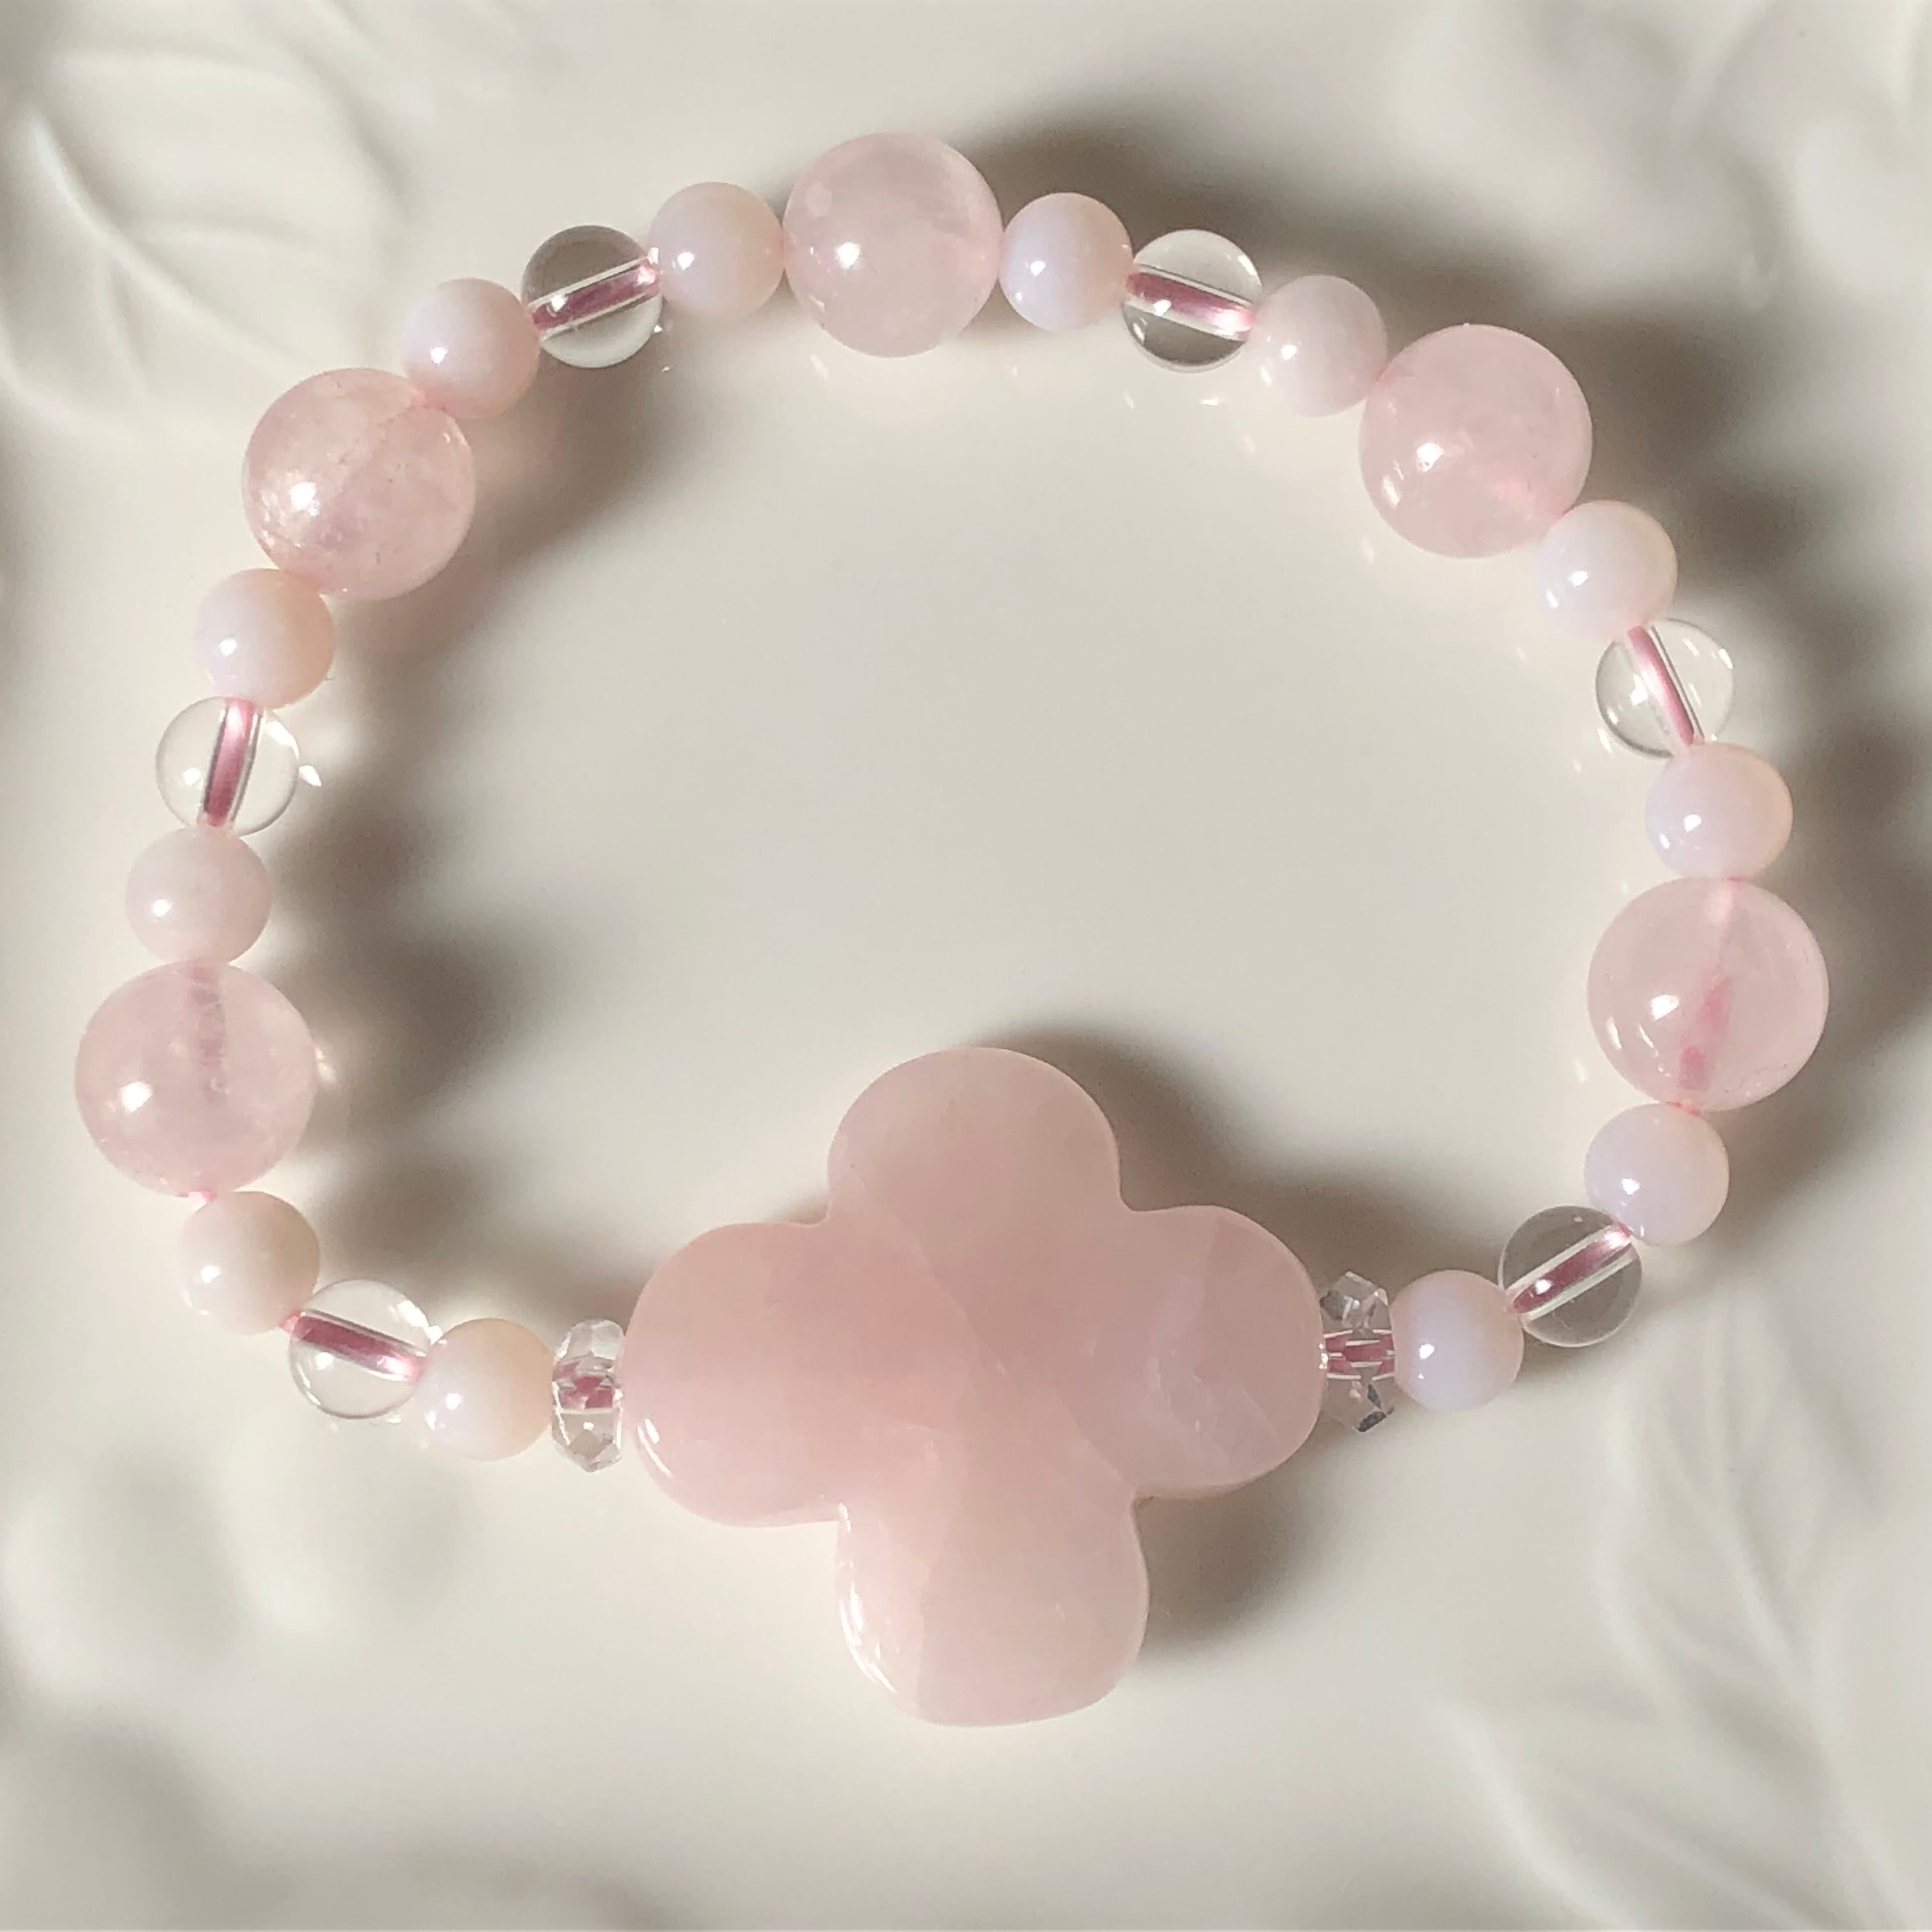 期間限定送料無料 w26 ピンク彫桜水晶 ローズクォーツ パワーストーンブレスレット 天然石